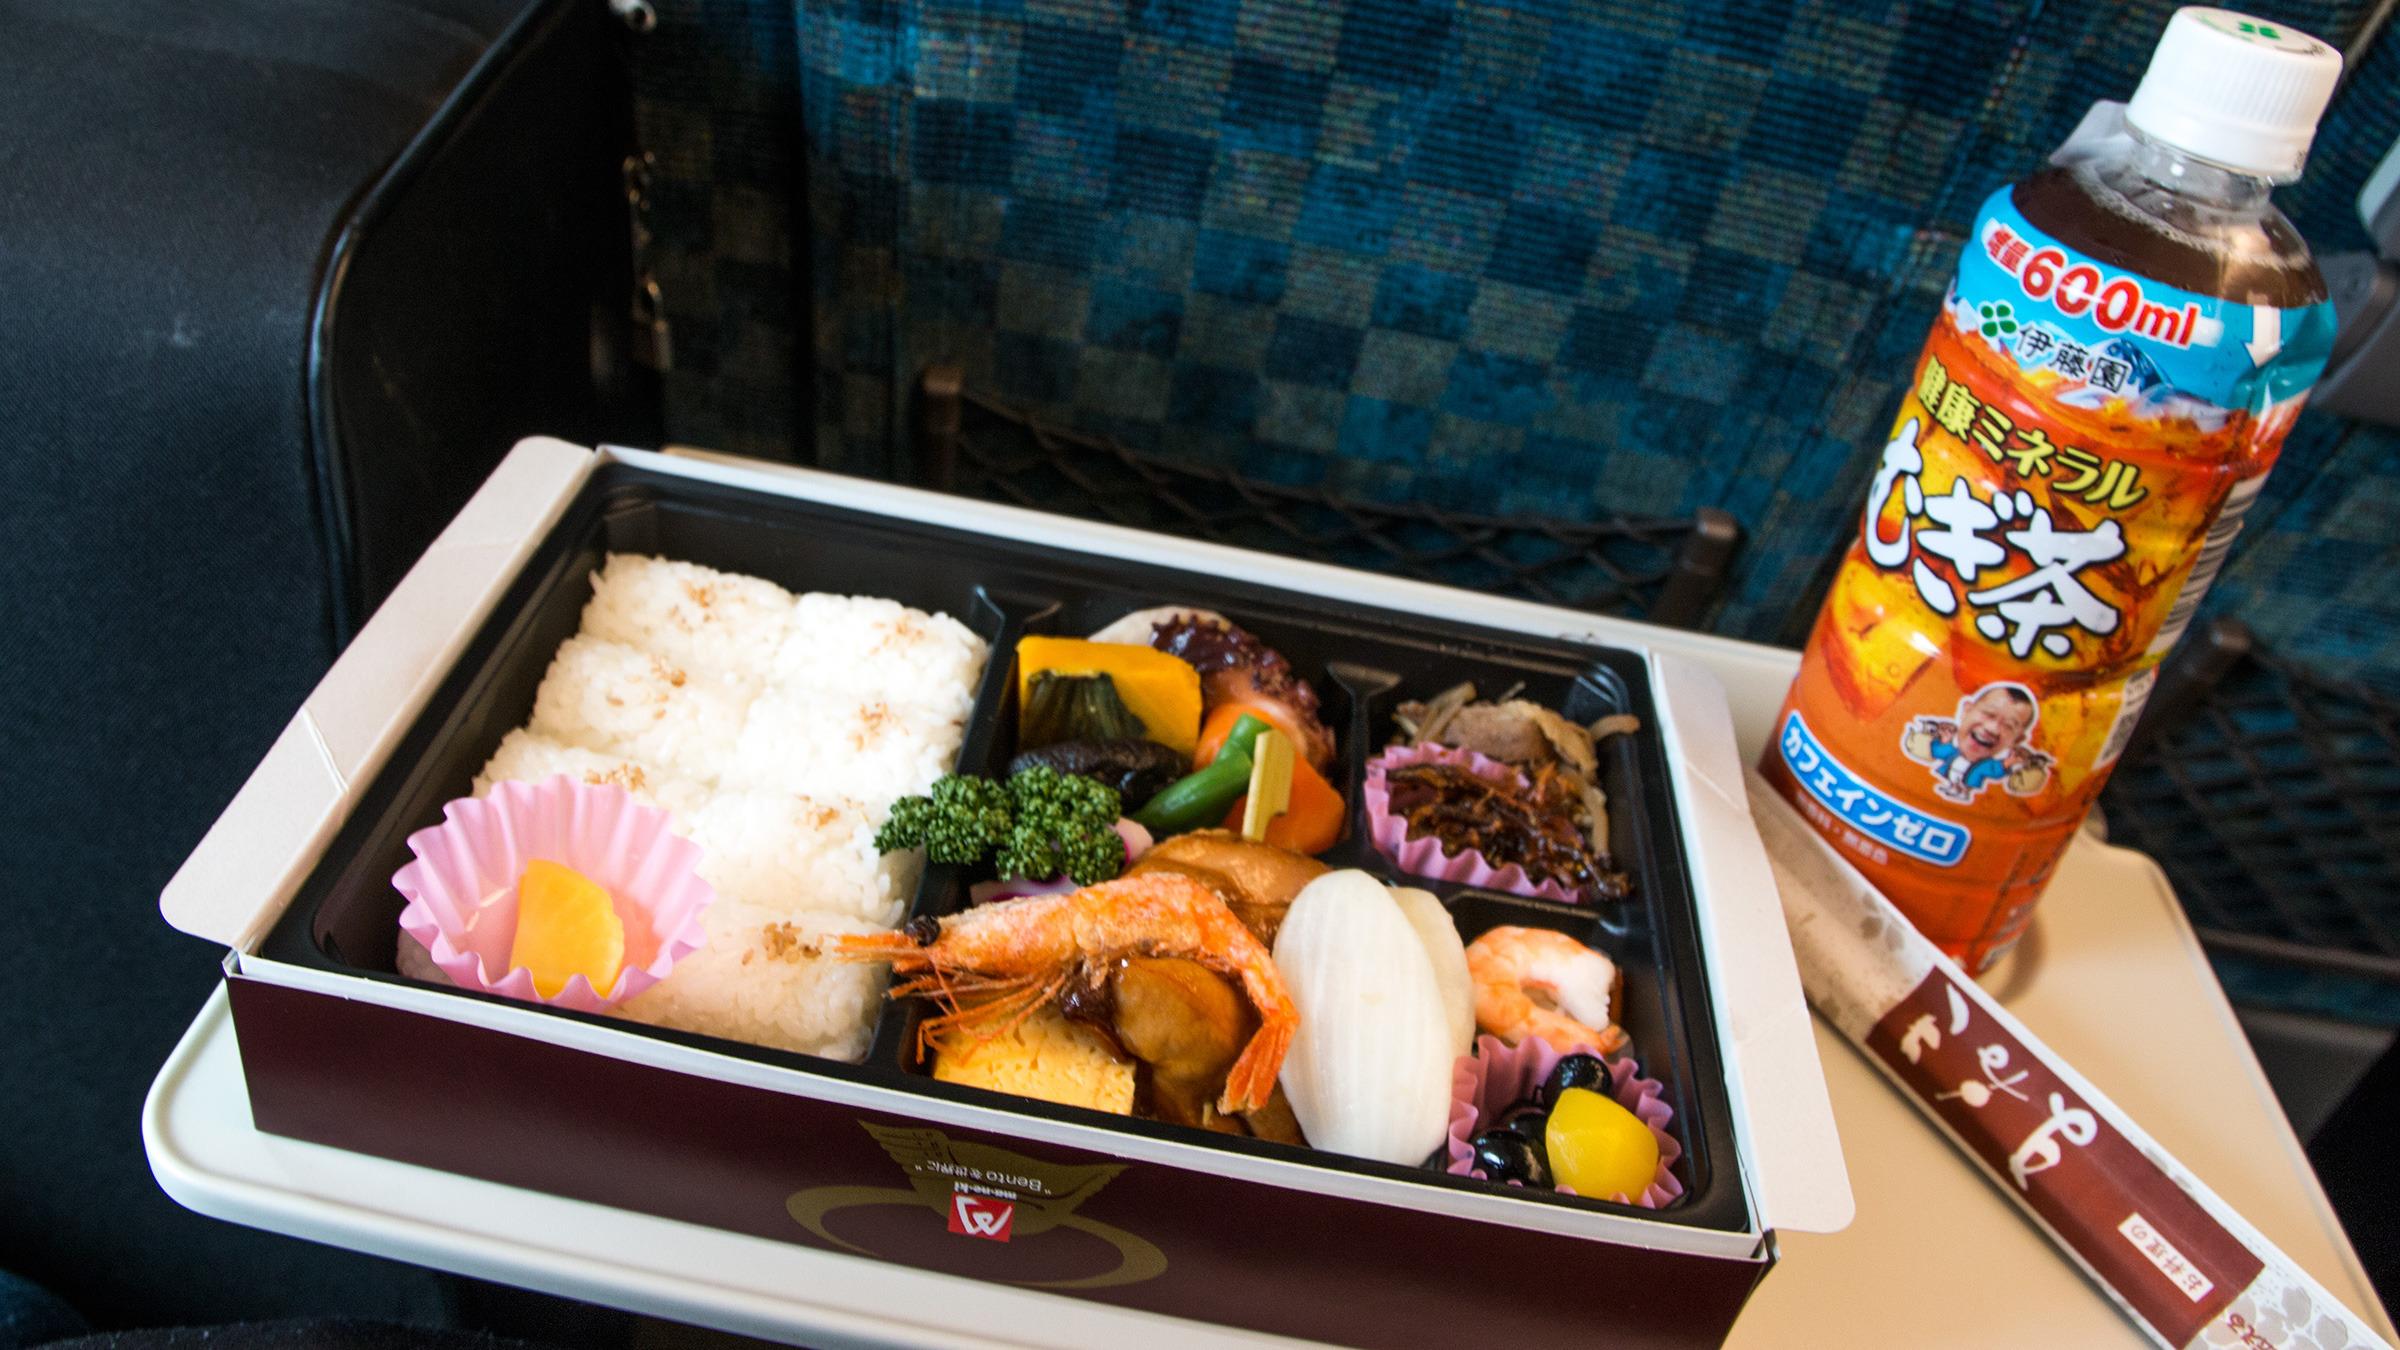 Når man beveger seg opp til SAKURA-linjen på Shinkansen blir også innholdet i matpakken mer spennende.Foto: Varg Aamo, Hardware.no